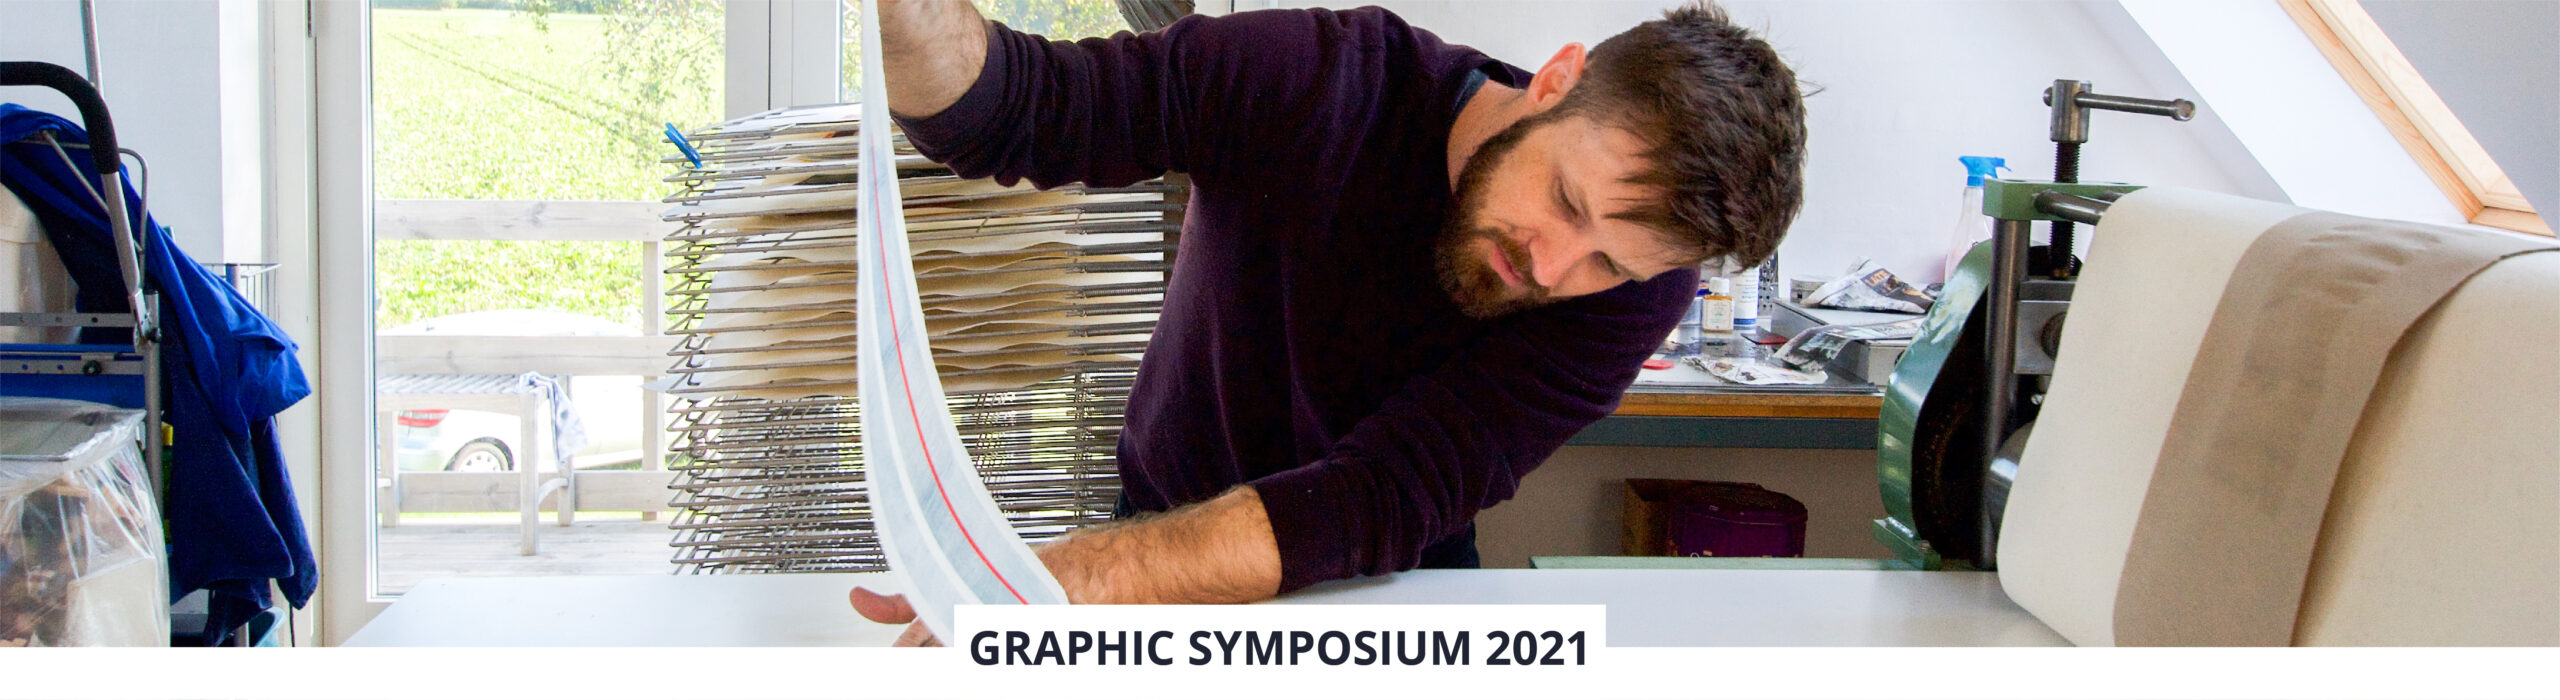 Graphic Symposium 2021